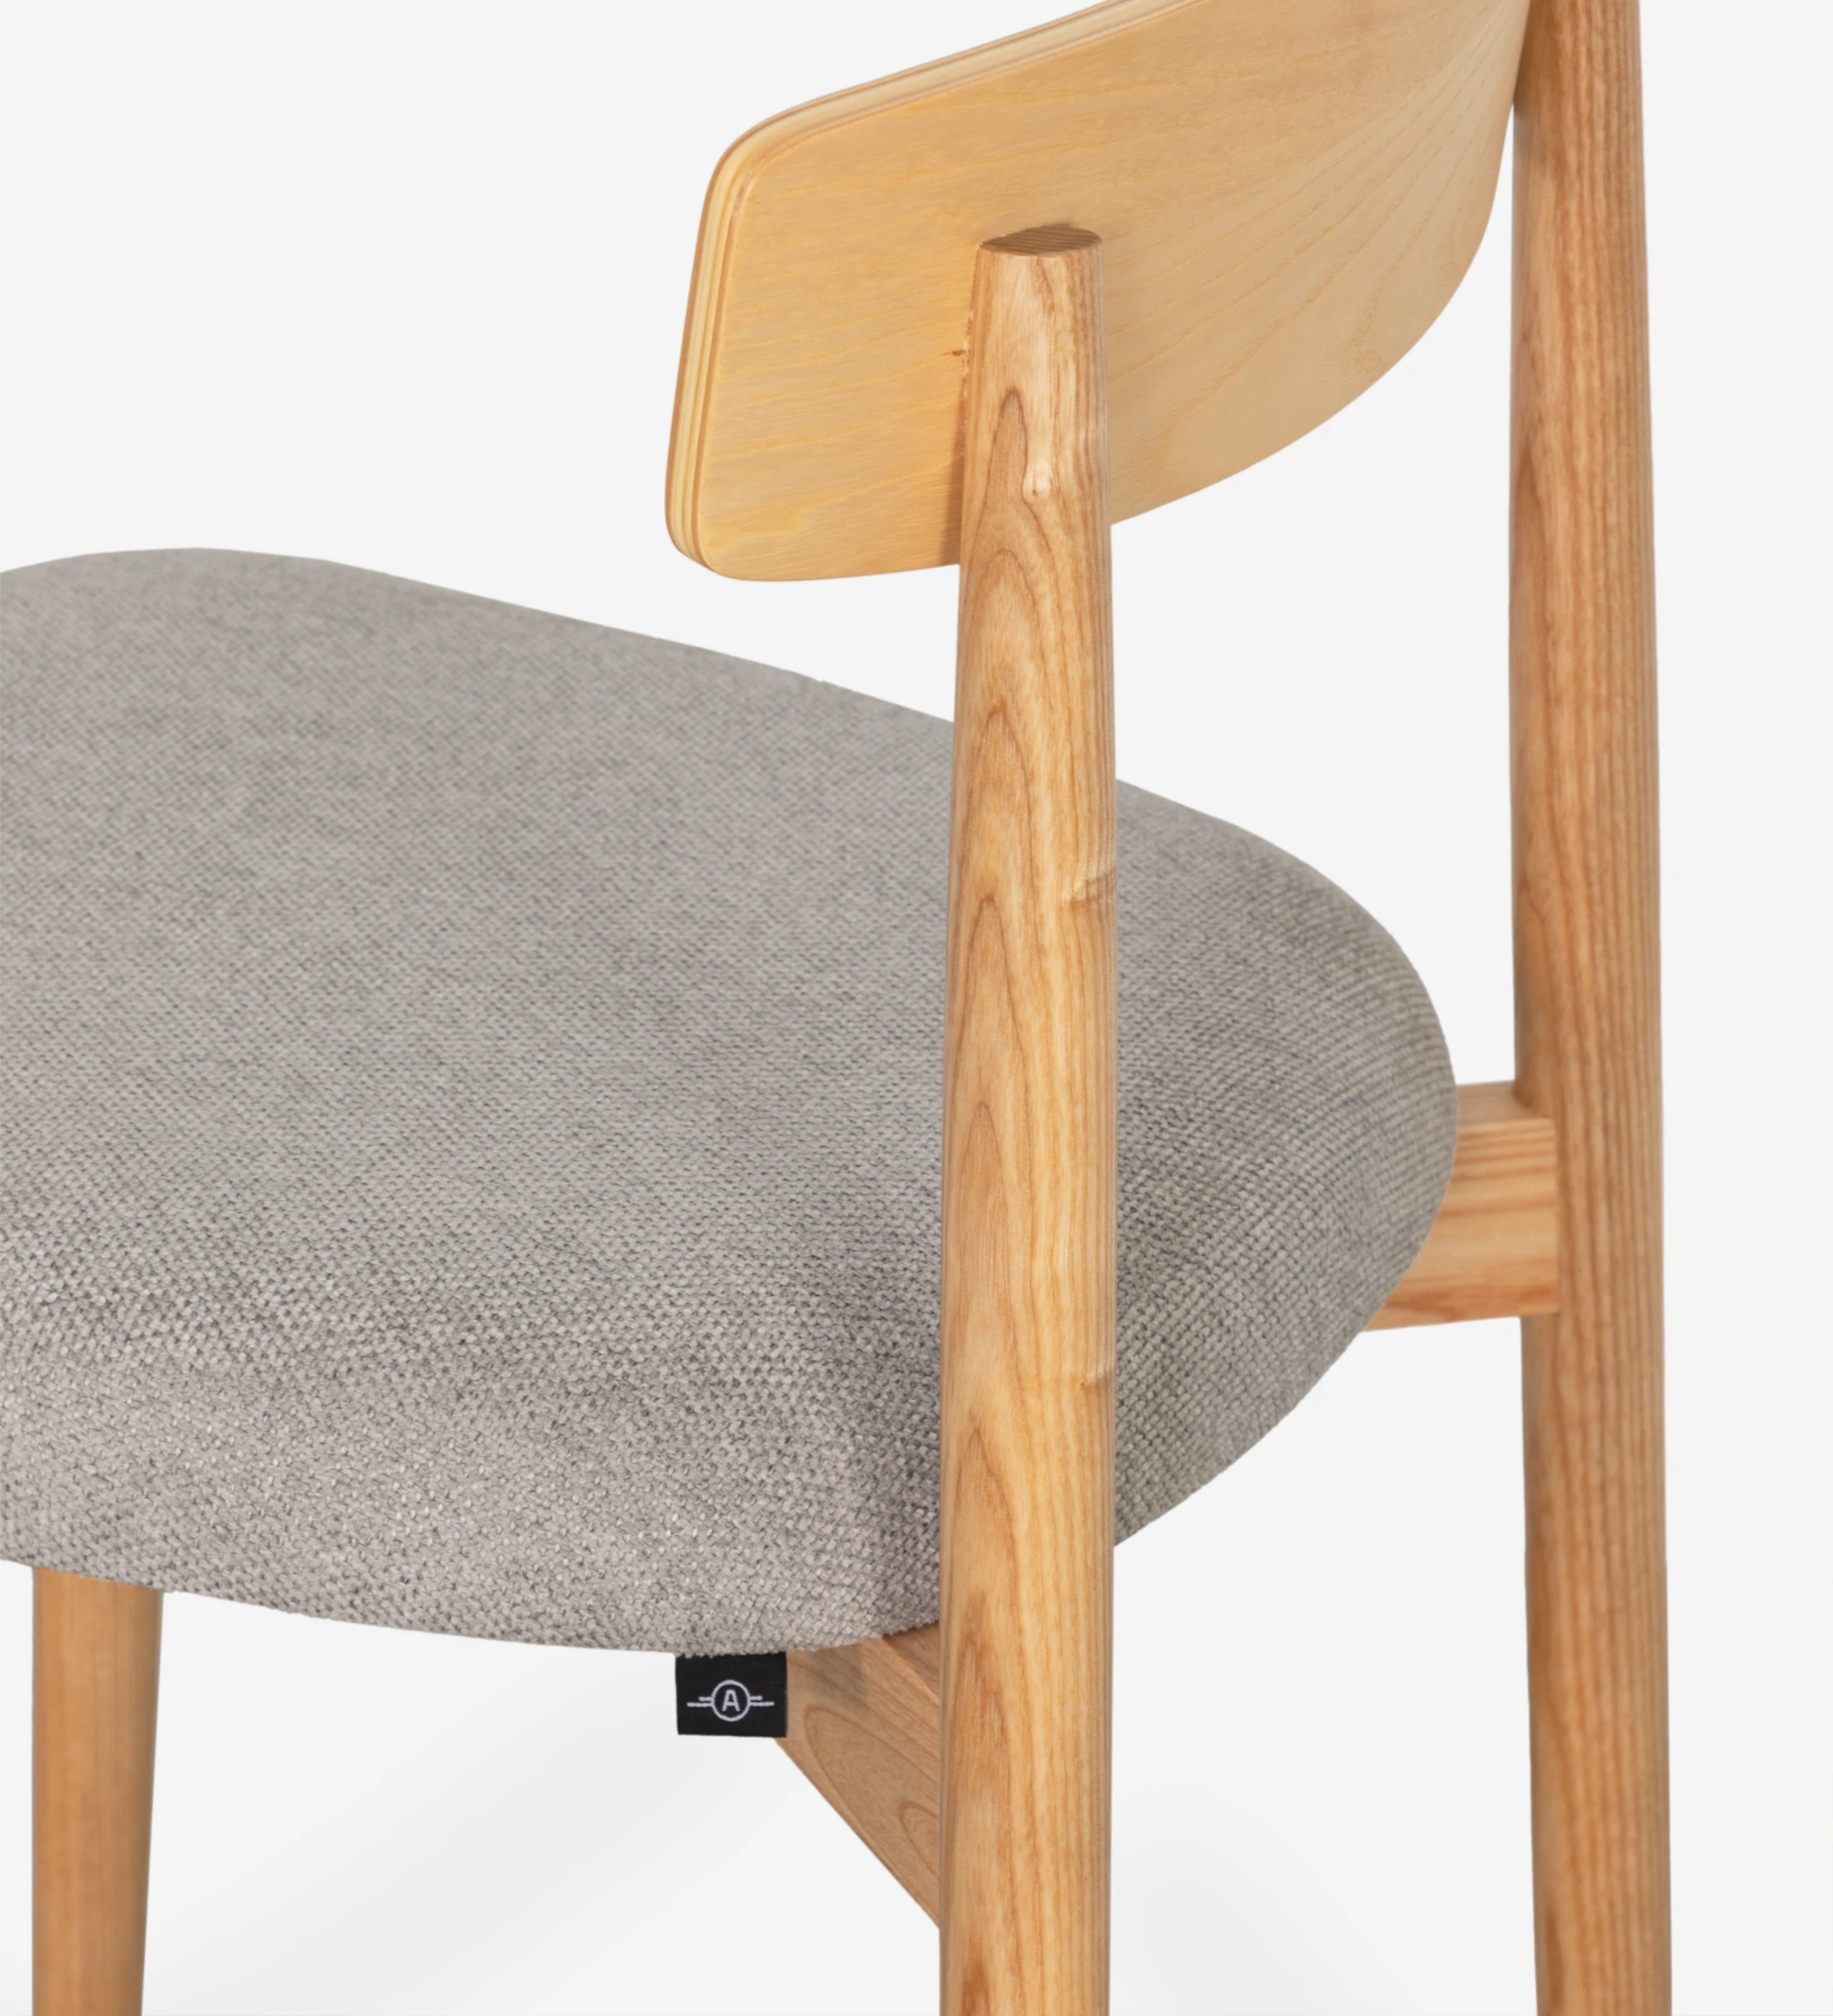 Cadeira em madeira cor natural com assento estofado a tecido